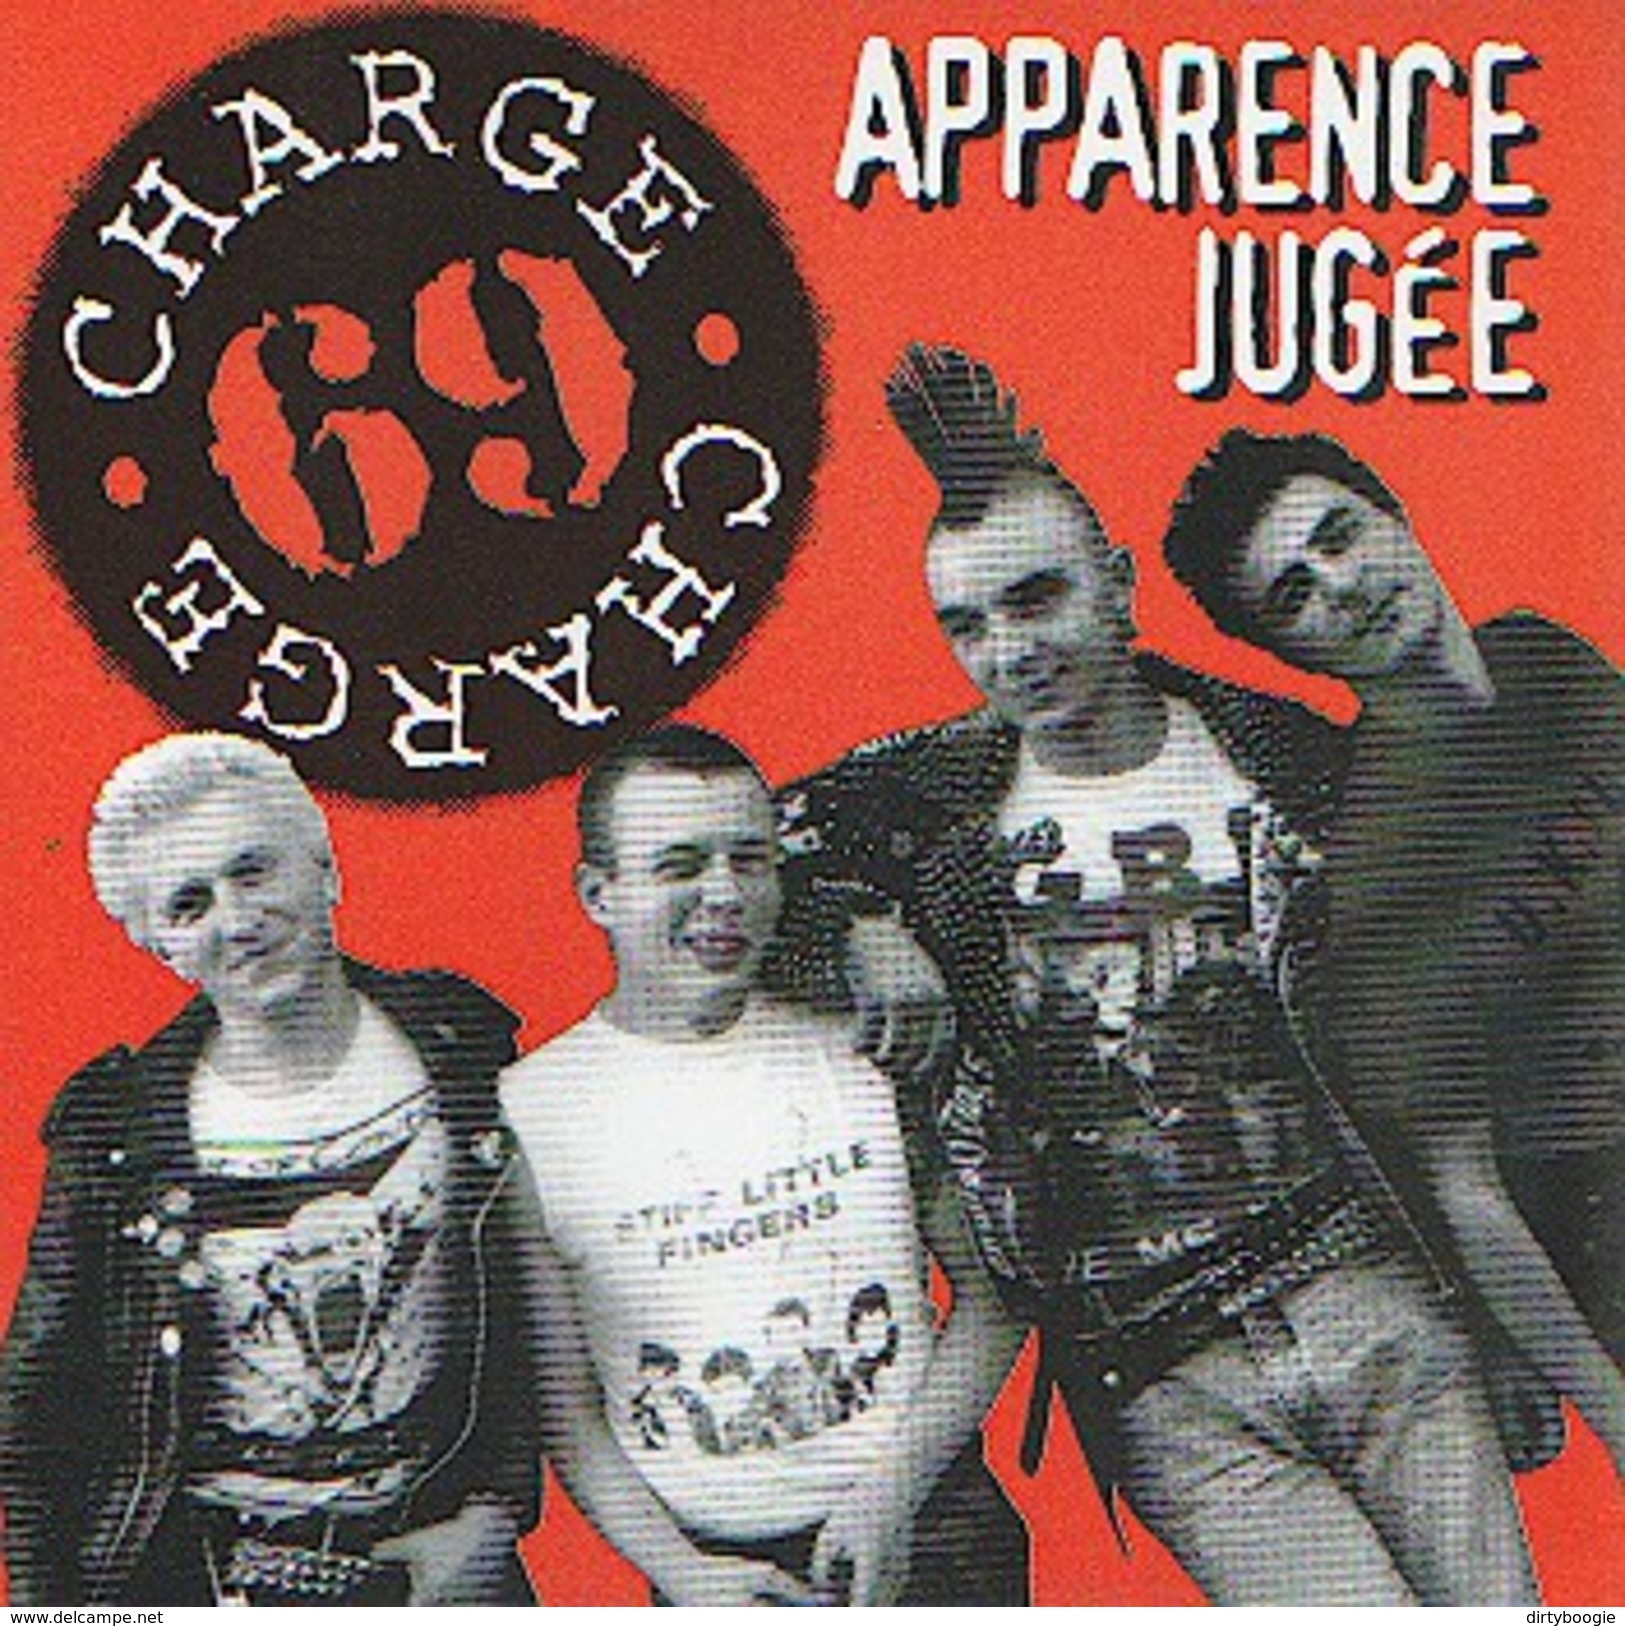 CHARGE 69 - Apparence Jugée - CD - COMBAT ROCK - PUNK - Punk